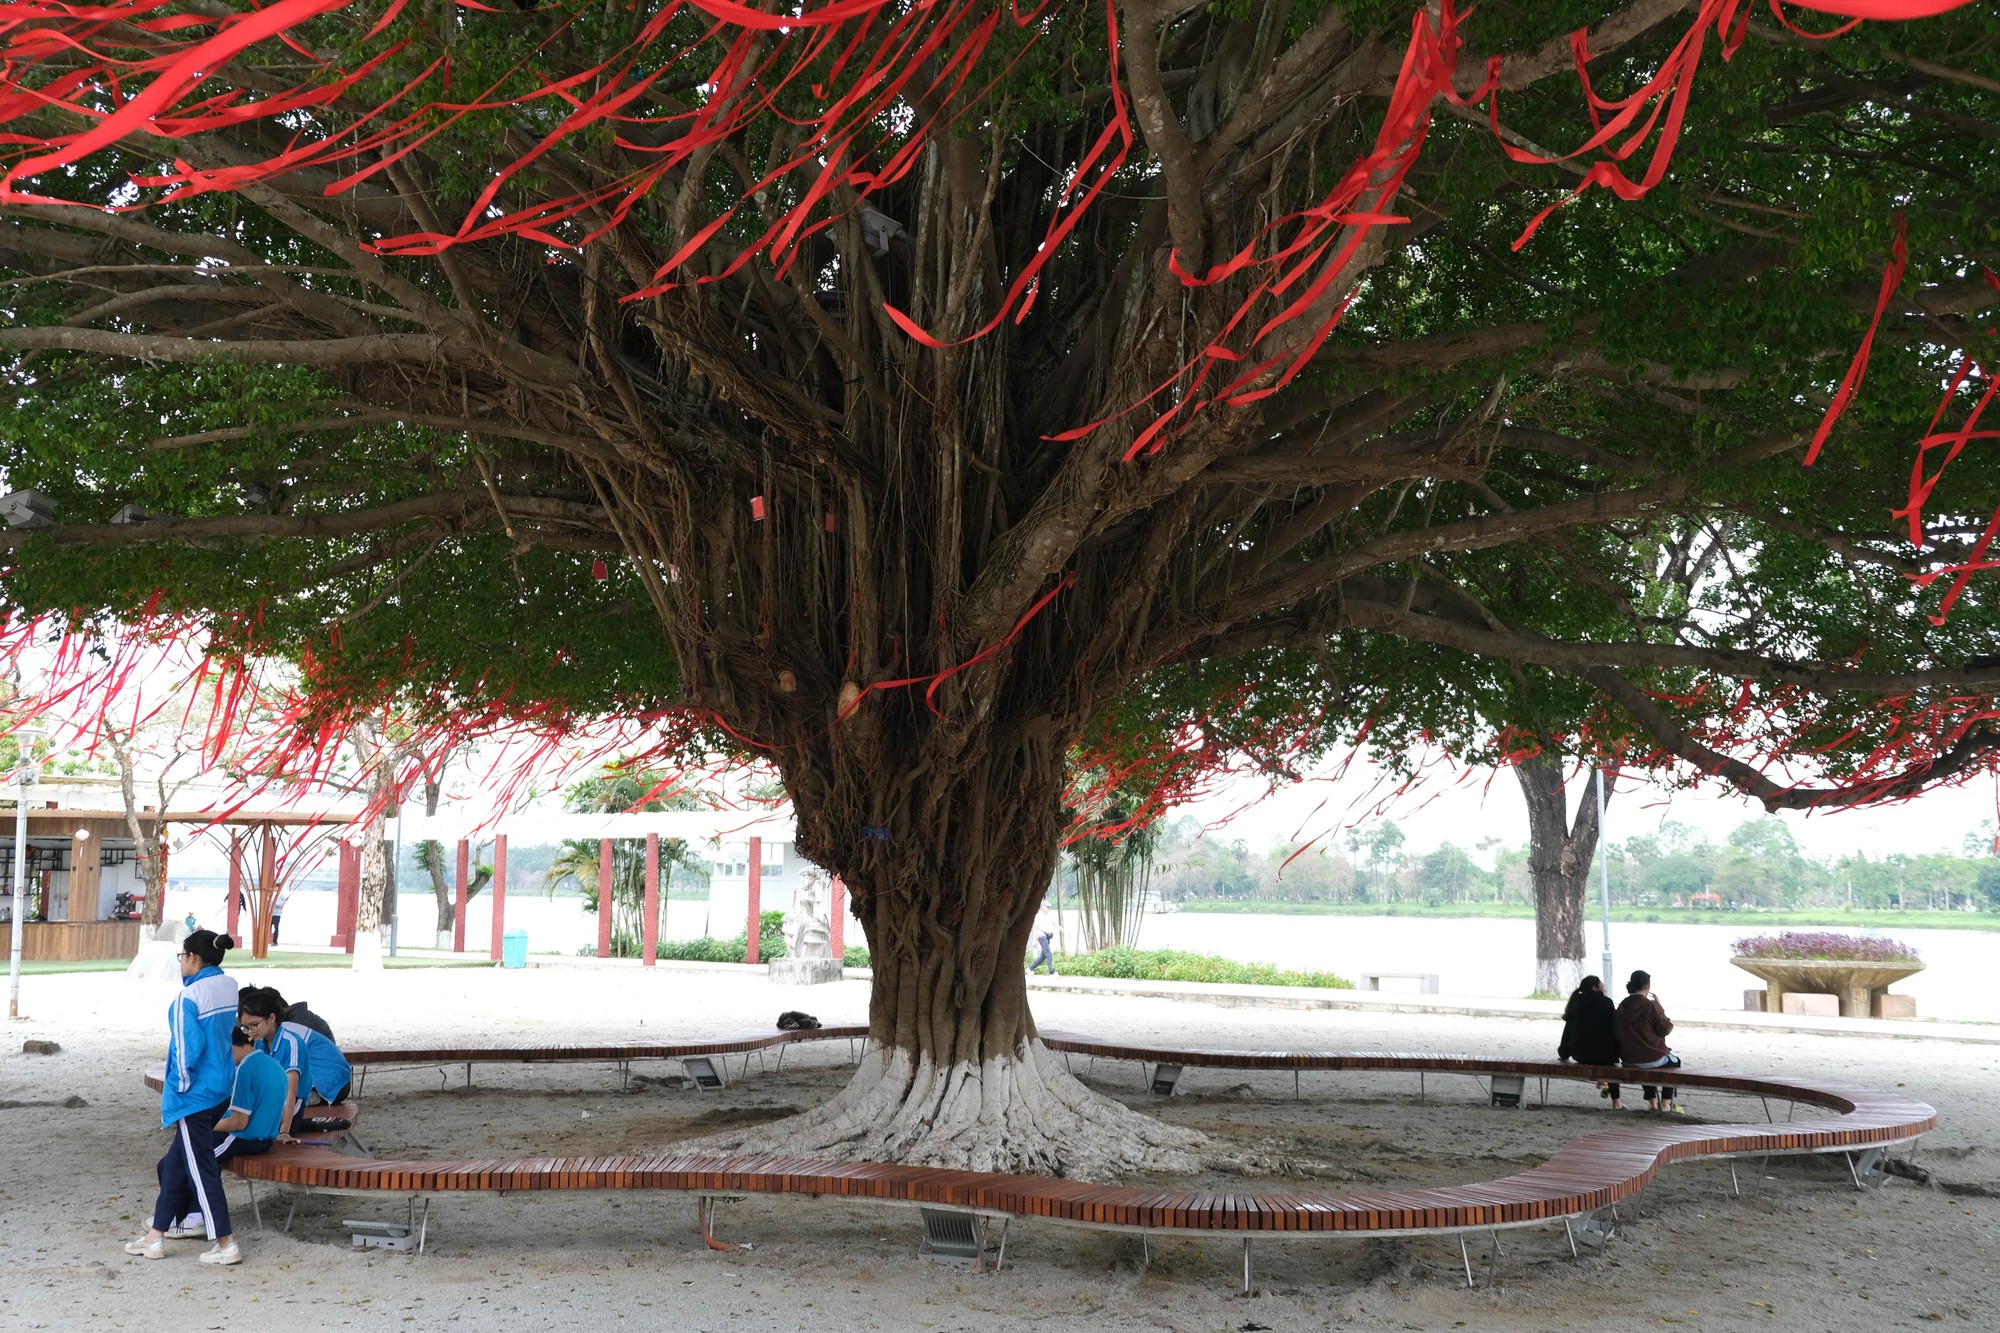 Cây sanh hay còn được gọi là cây Xanh, cây Gừa... có tên khoa học là Ficus Benjamina L, đây là loại cây được trồng phổ biến ở các nước Đông Nam Á.